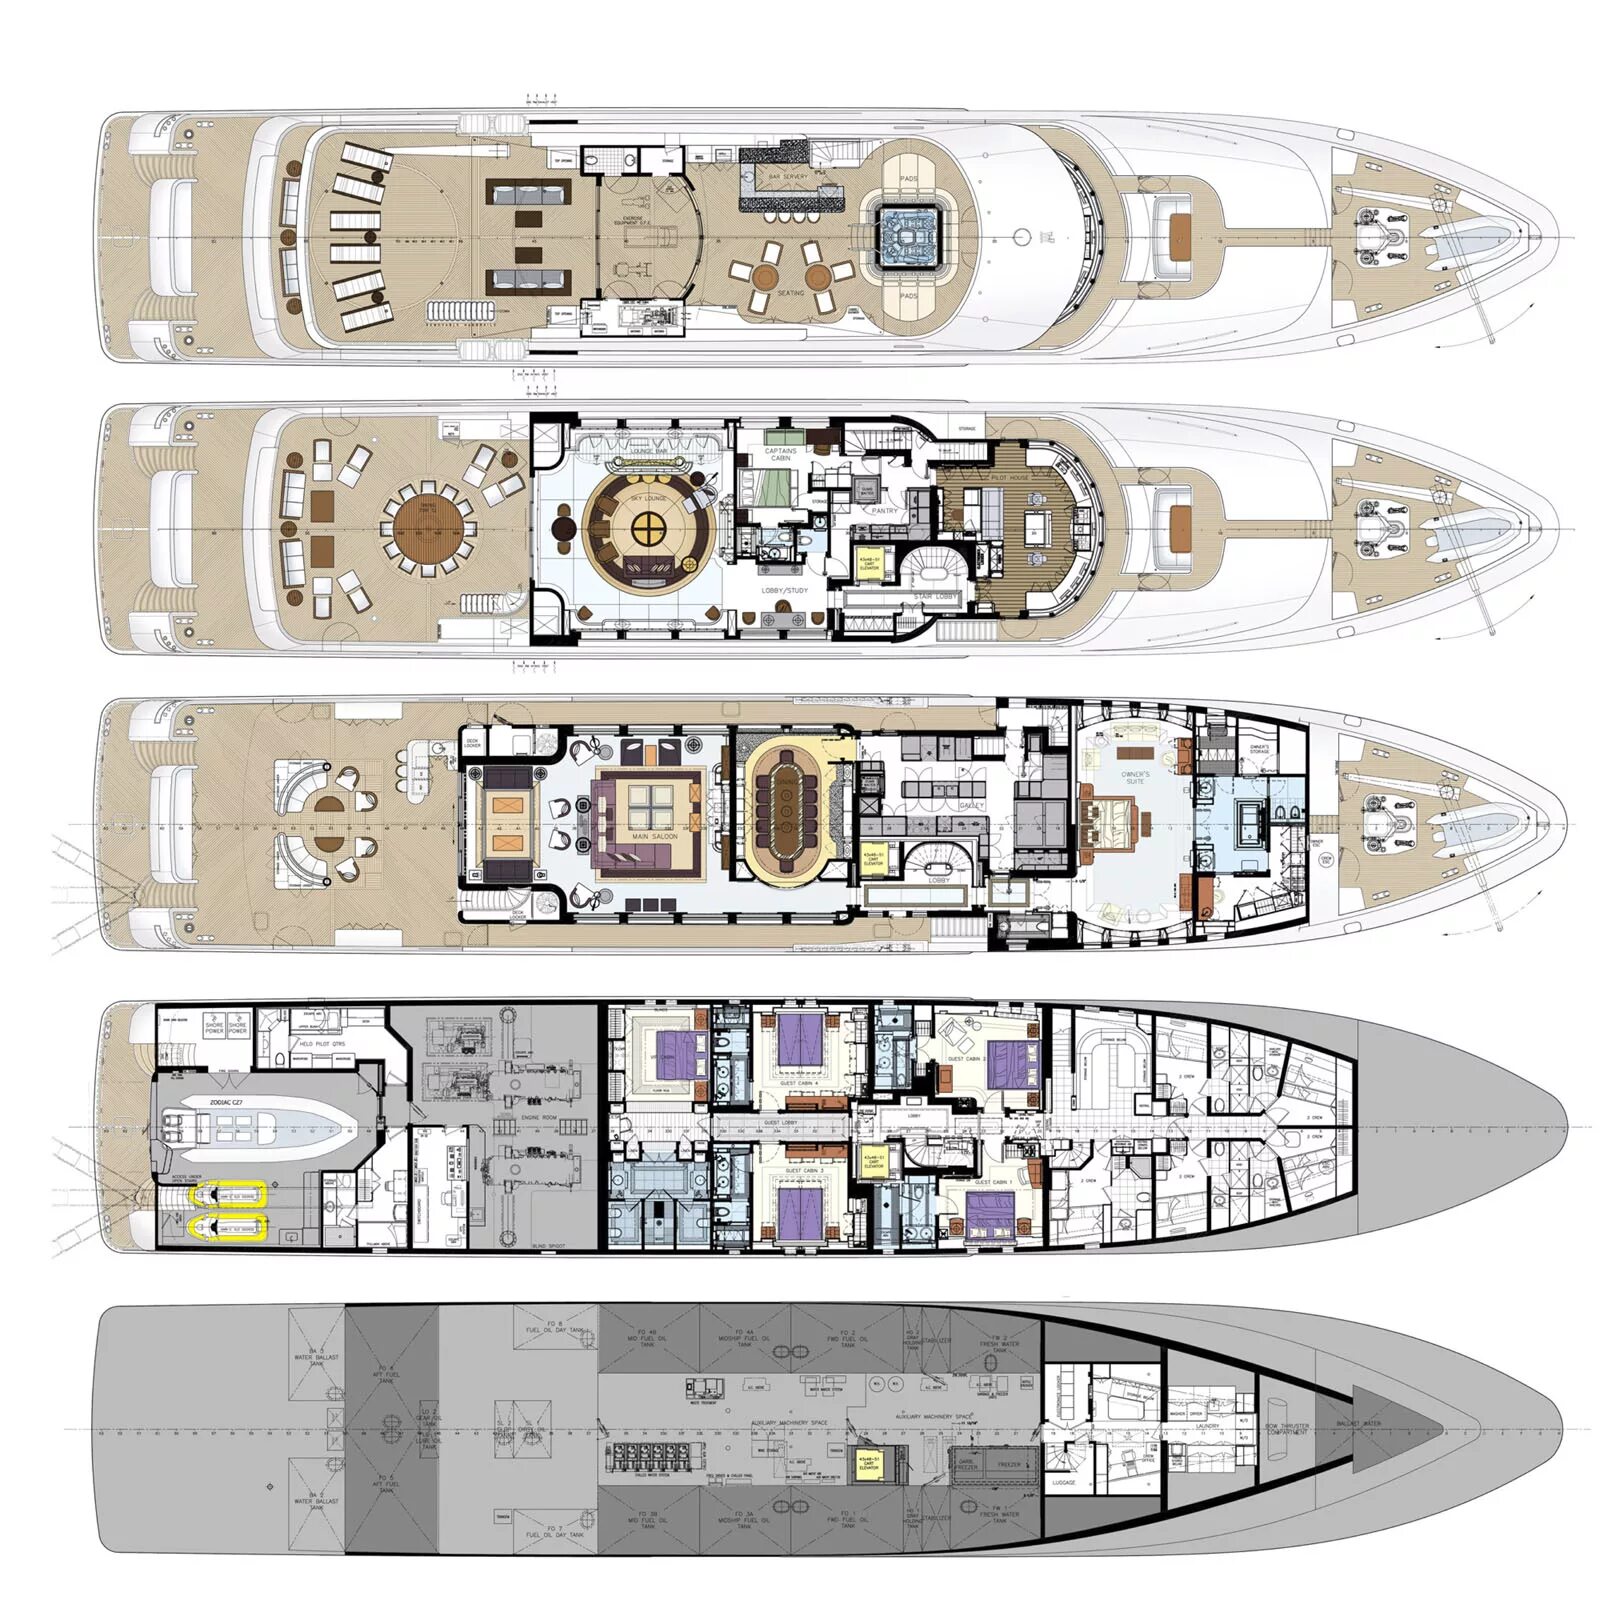 Планы палуб. Яхта Ace 85 m план палуб. Elan 42 моторная яхта план палуб. Superyacht solo план палуб. План палуб мегаяхты.